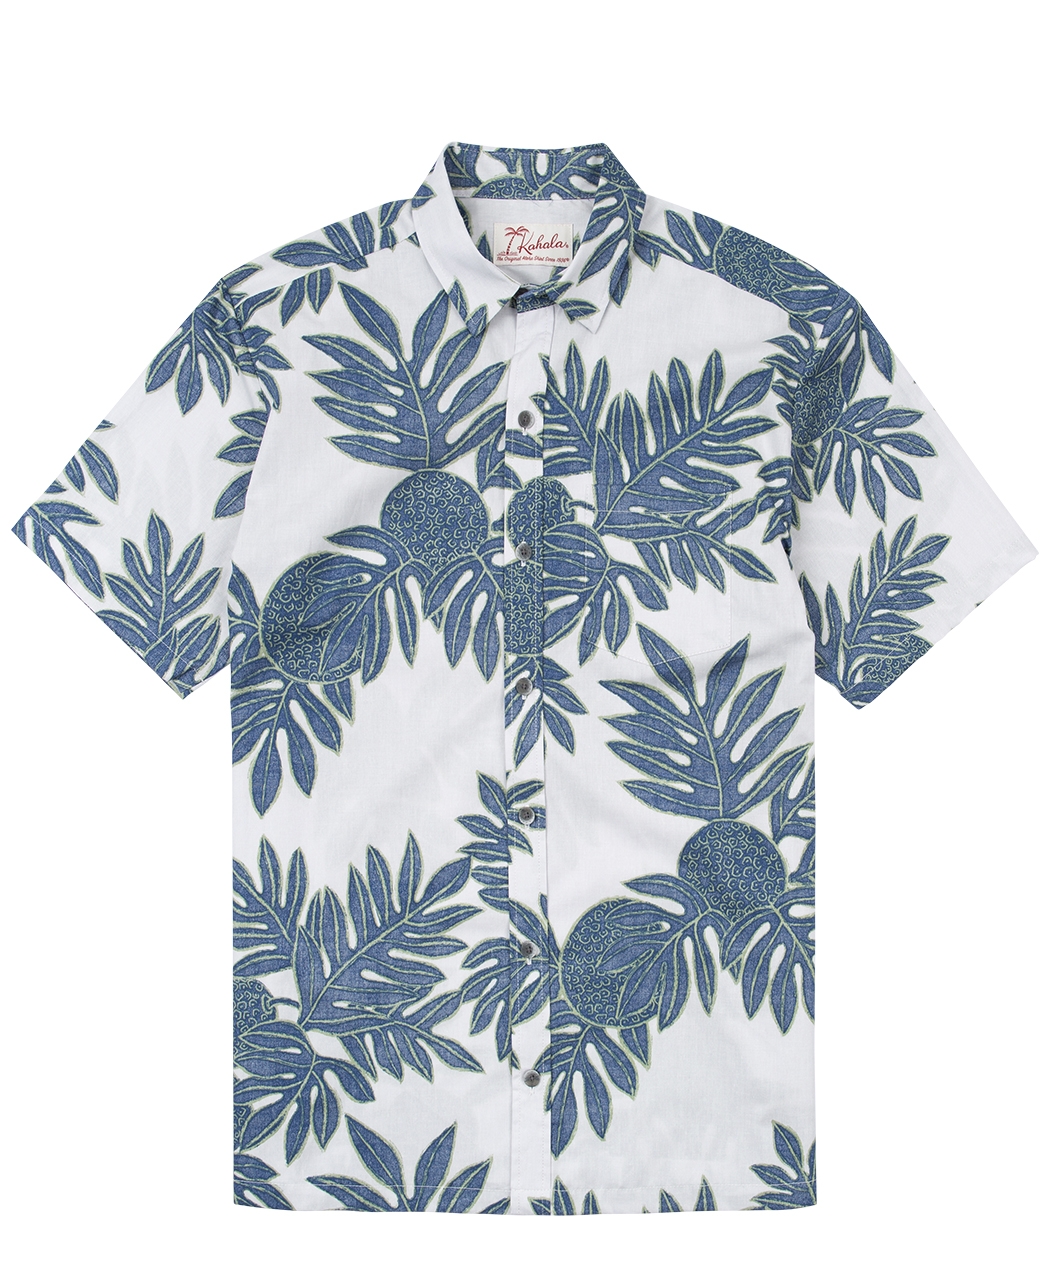 Laiaulu Hawaiian Shirt - Pick A Quilt